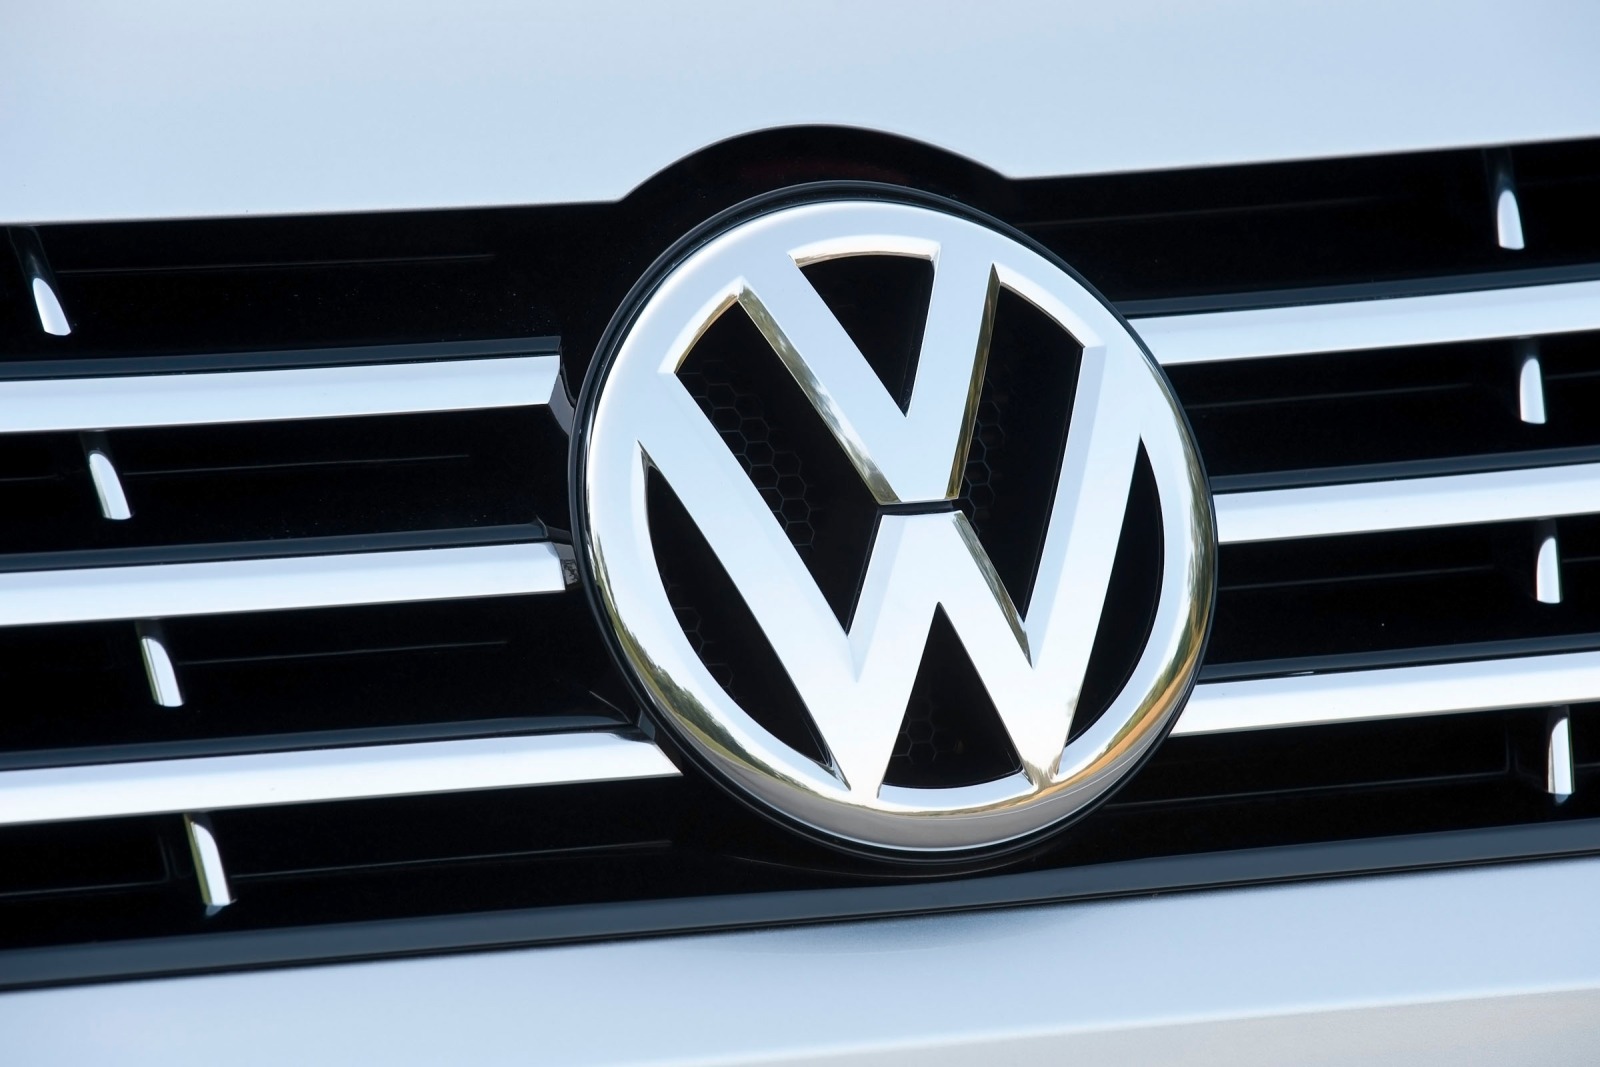 2013 Volkswagen Passat V6 SE Sedan Front Badge